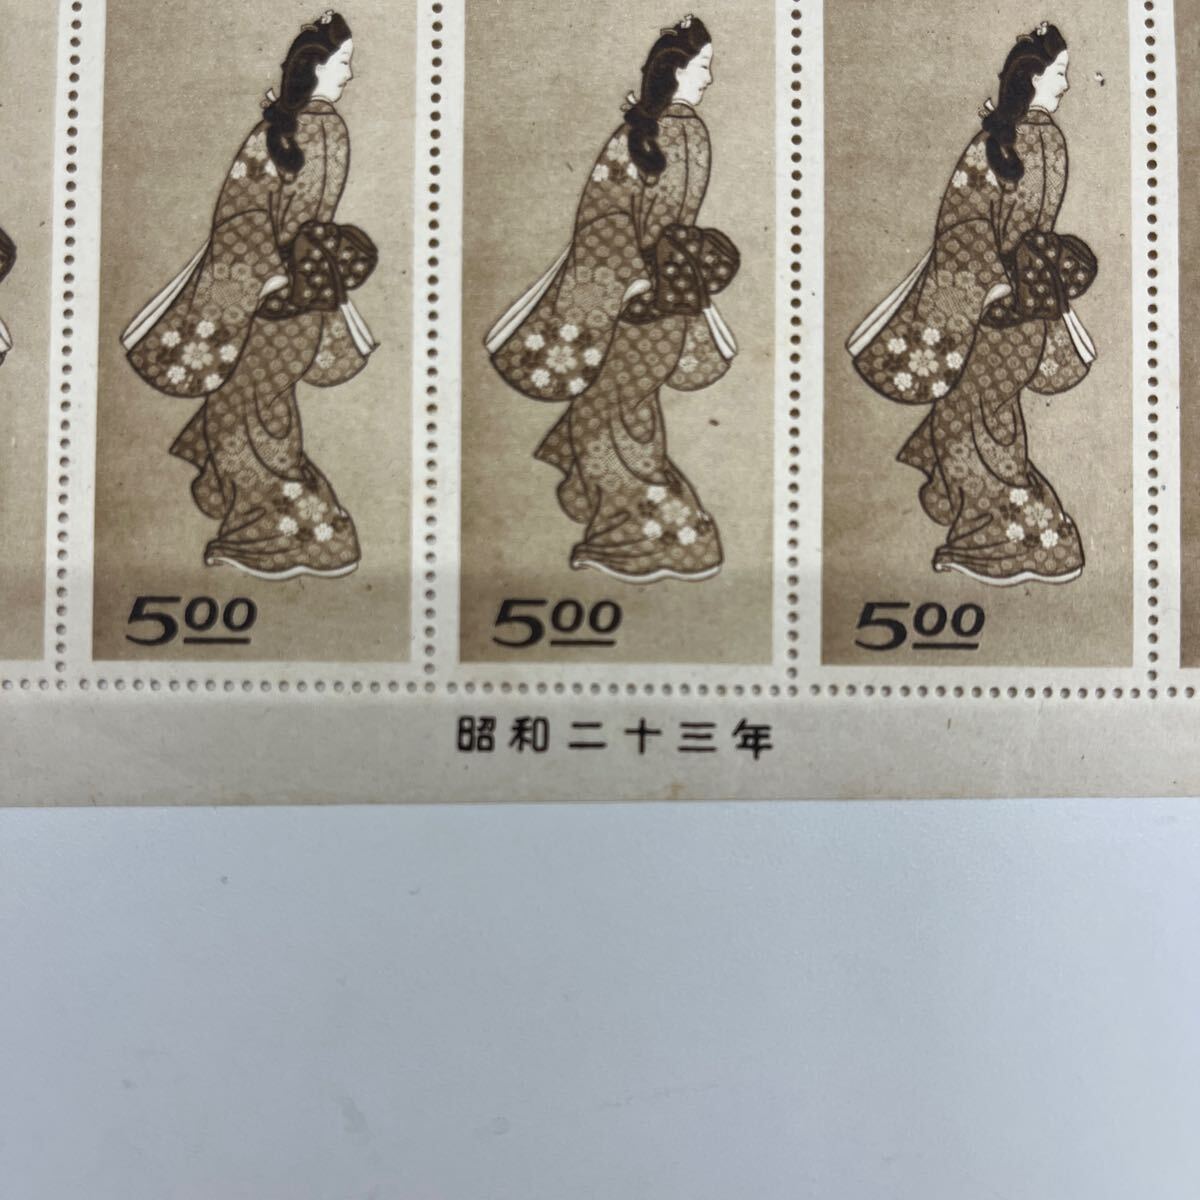 770. 日本切手 切手趣味週間 見返り美人 切手 5円 昭和23年 シートの画像4